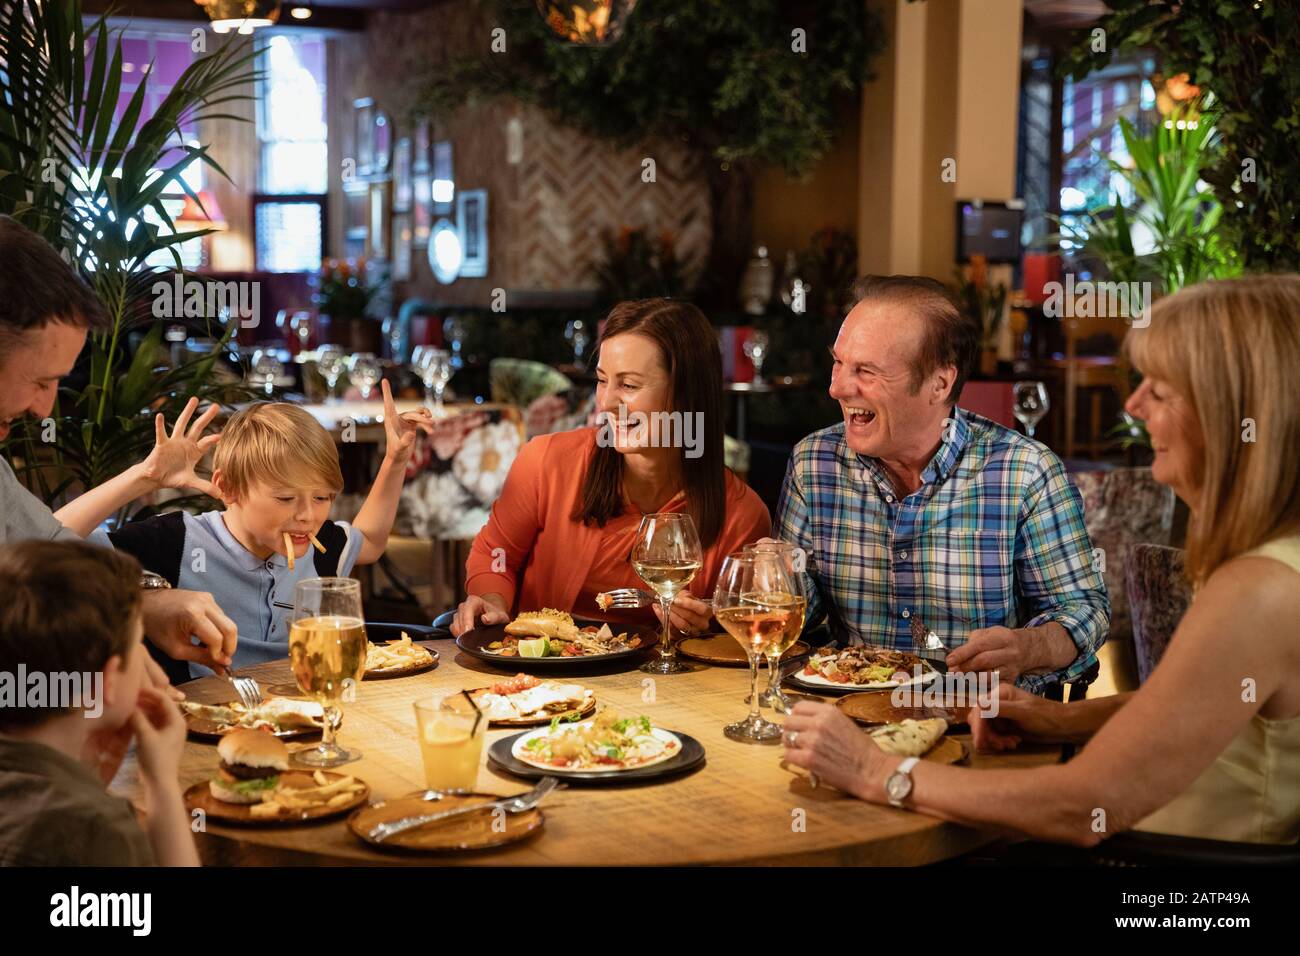 Eine Familie, die ein Essen in einem Restaurant hat. Ein kleiner Junge bringt sie alle zum Lachen, indem er ein Gesicht mit Essen macht. Stockfoto